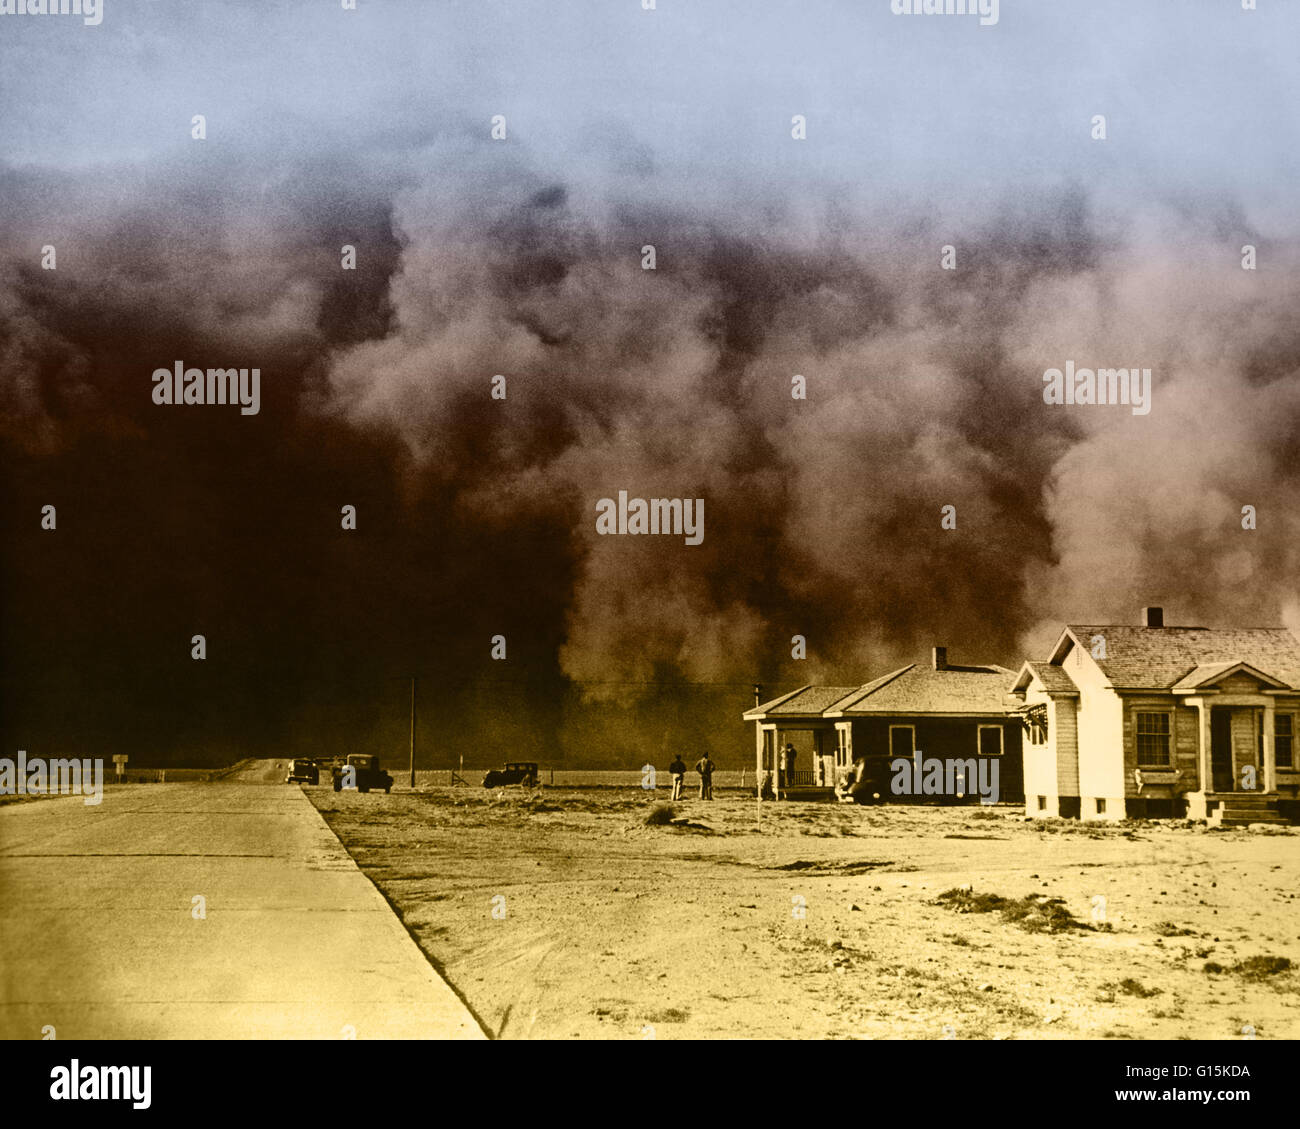 Enorme tempesta di polvere hits Springfield, Colorado durante la vaschetta della polvere, un agricolo, ecologici e di disastro economico nella regione delle grandi pianure del nord America negli anni trenta. Foto Stock